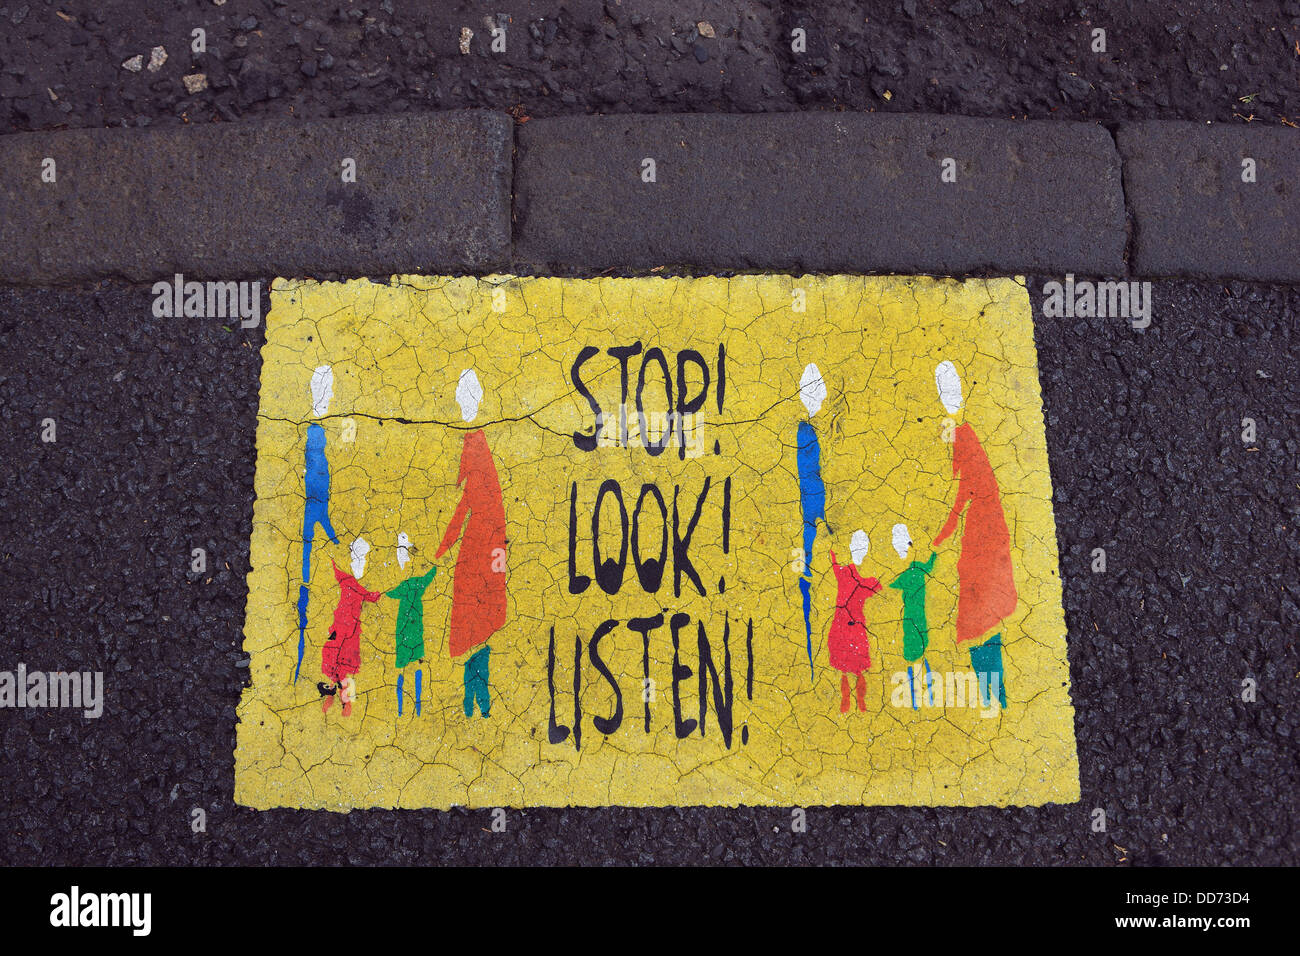 Stoppschild sehen und hören, richten sich an Kinder, auf dem Bürgersteig in der schottischen Dorf Aberdour in Fife Schottland Stockfoto